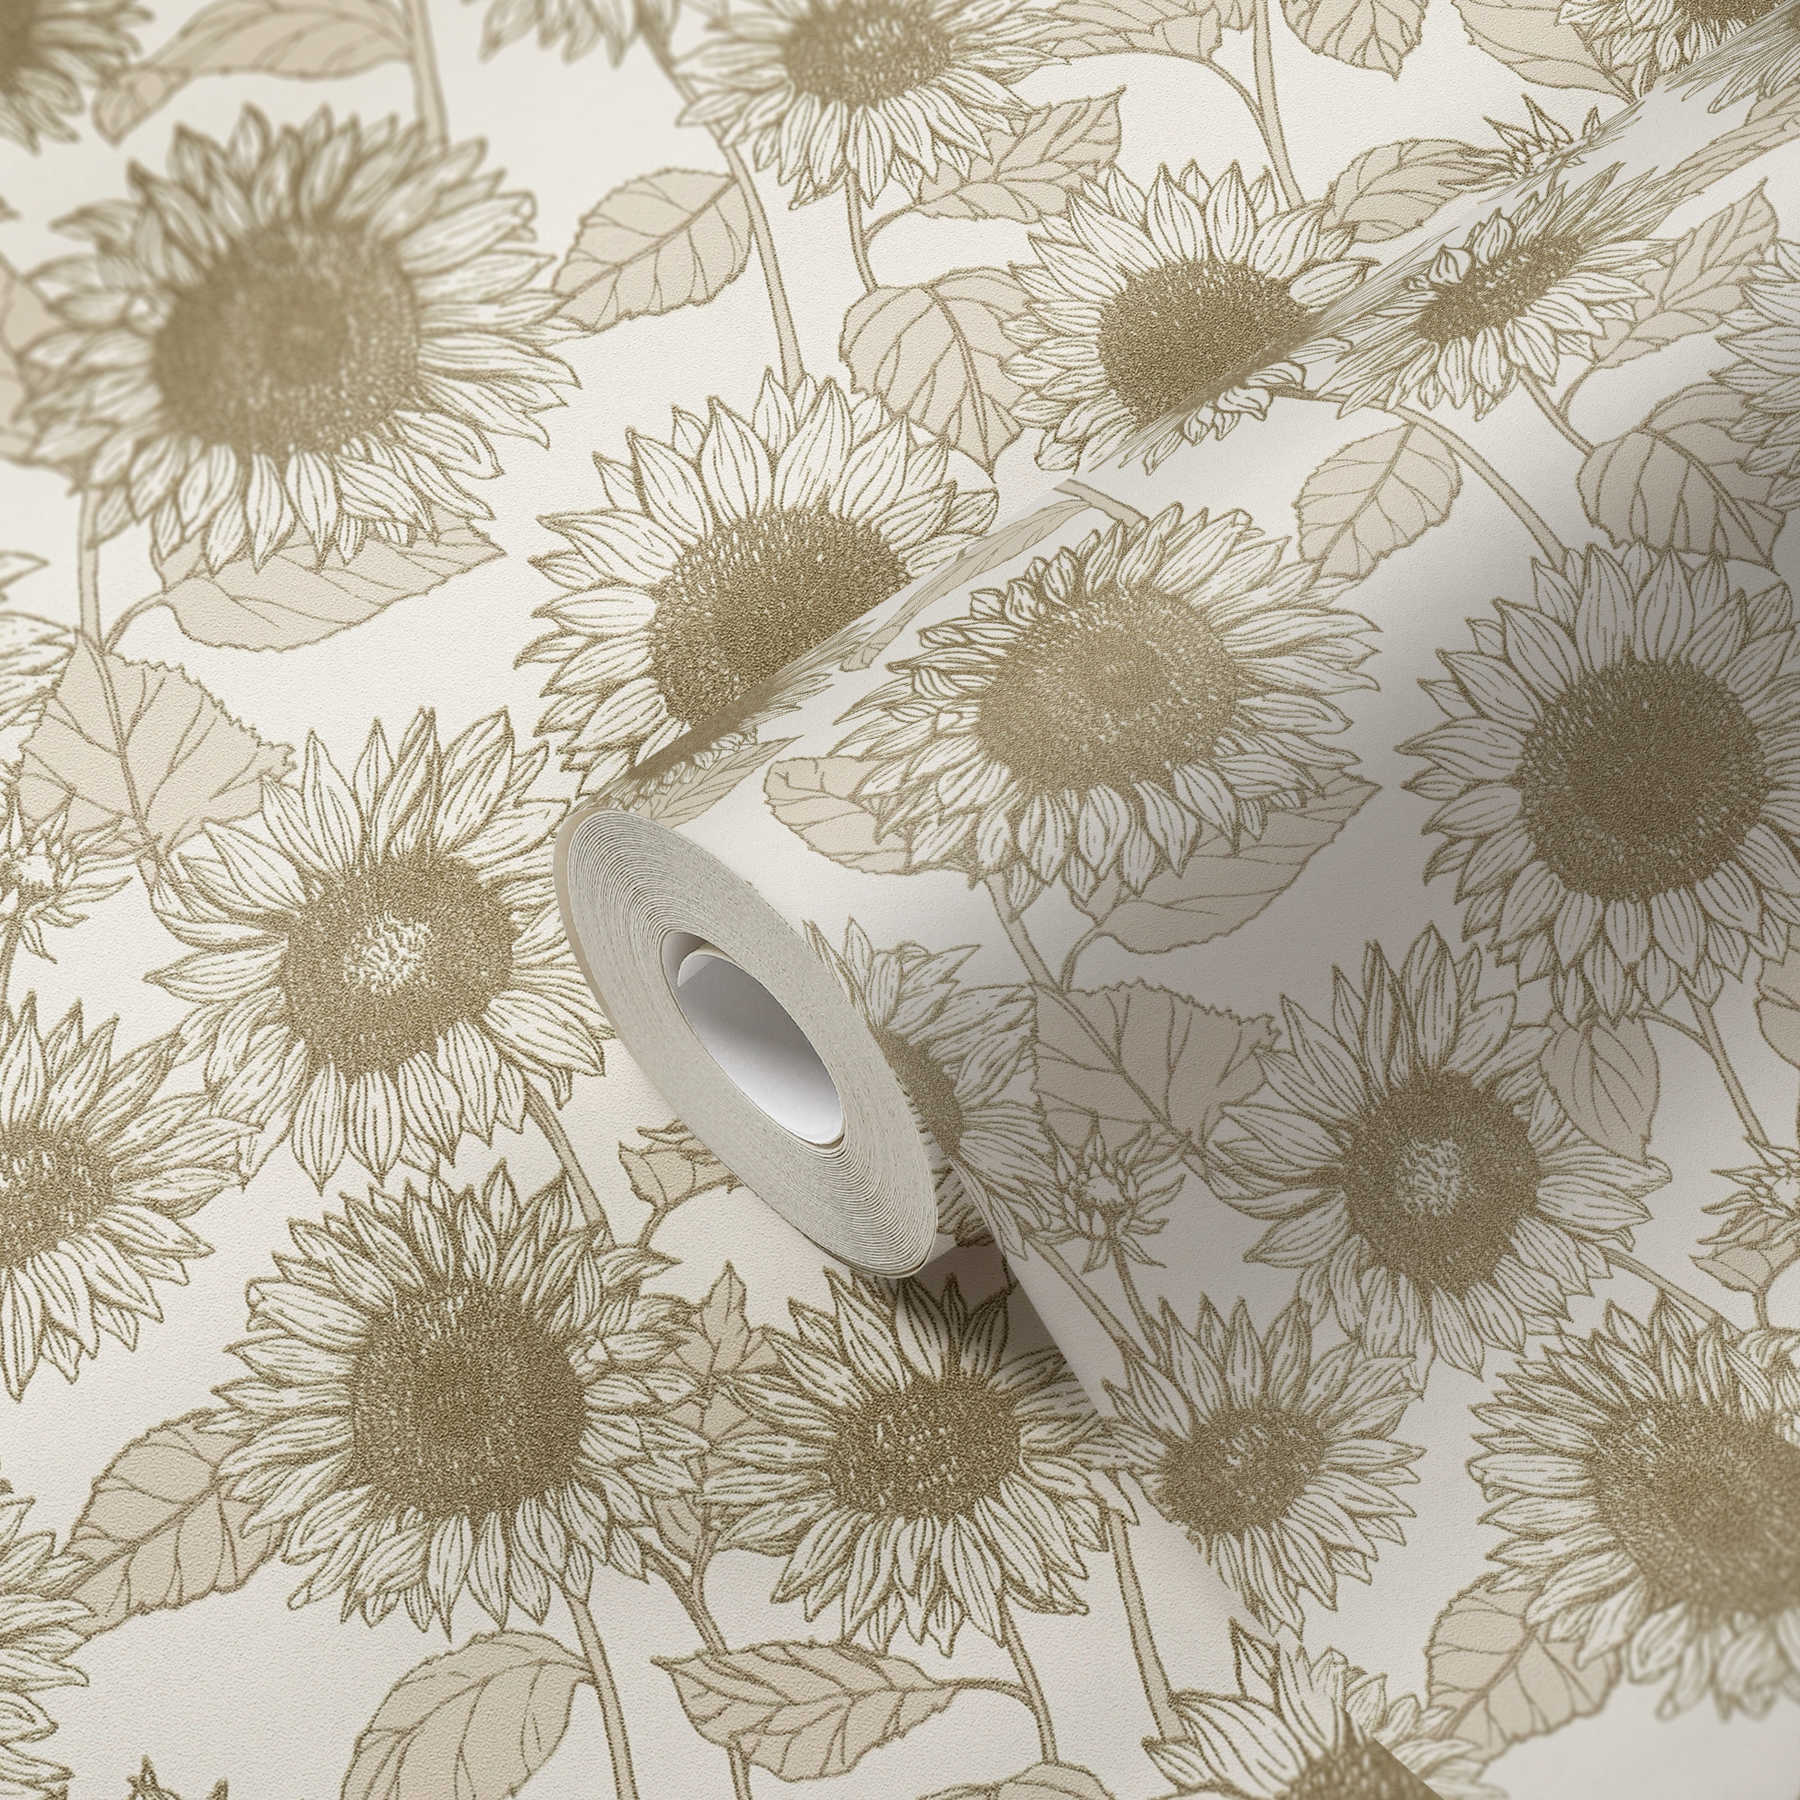             Tapete Sonnenblumen mit Metallic-Effekt – Beige, Weiß
        